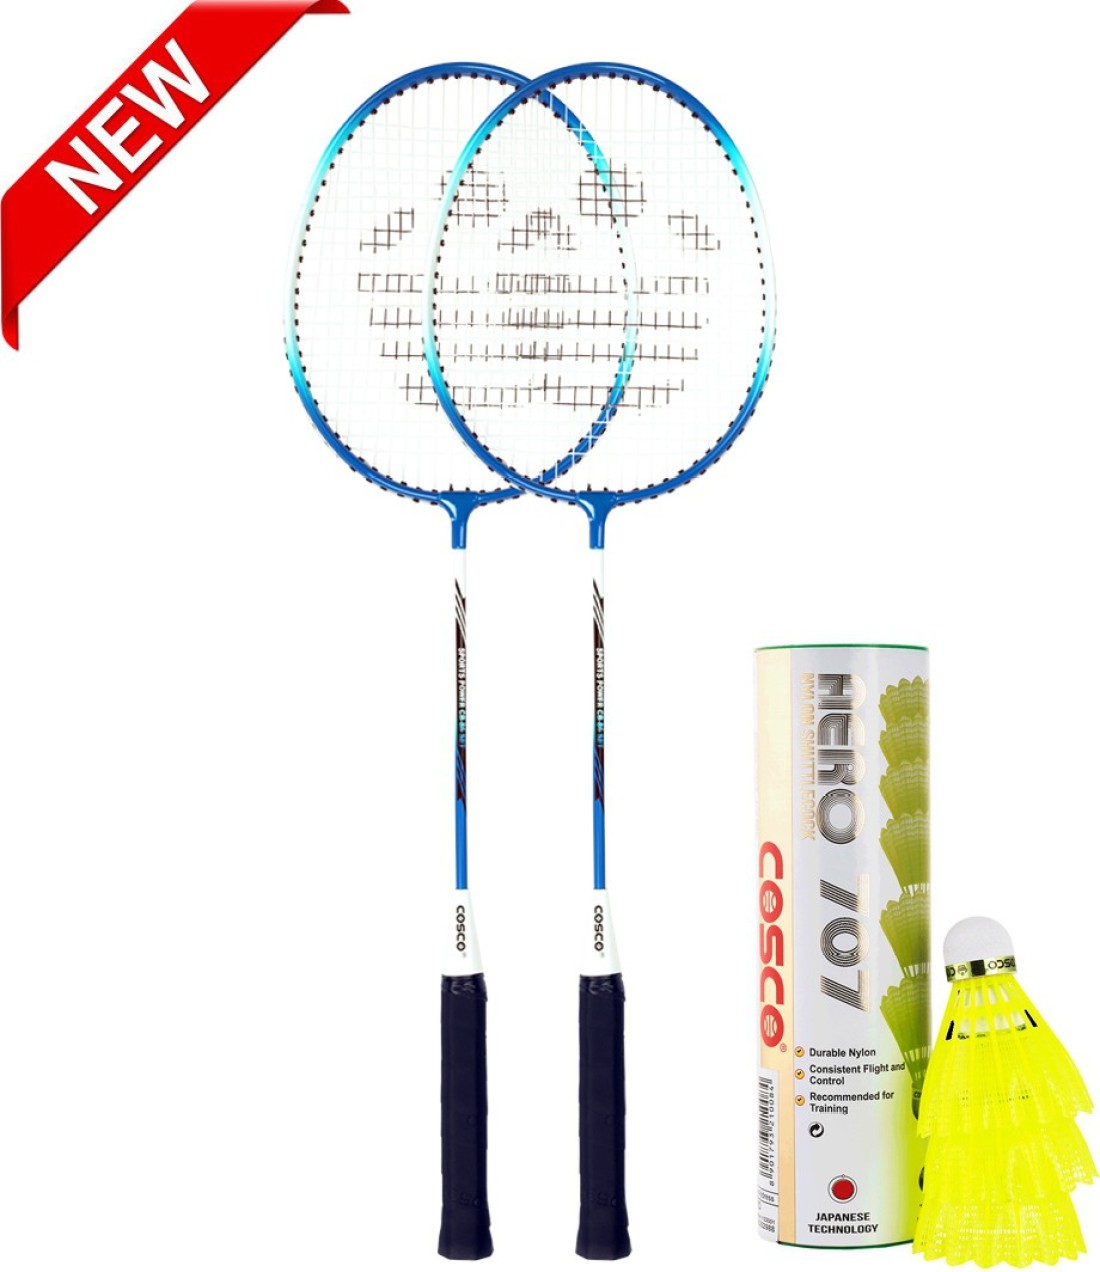 COSCO Badminton Set CB-86 Racquet With Aero 707 Shuttle Box Multicolor Strung Badminton Racquet